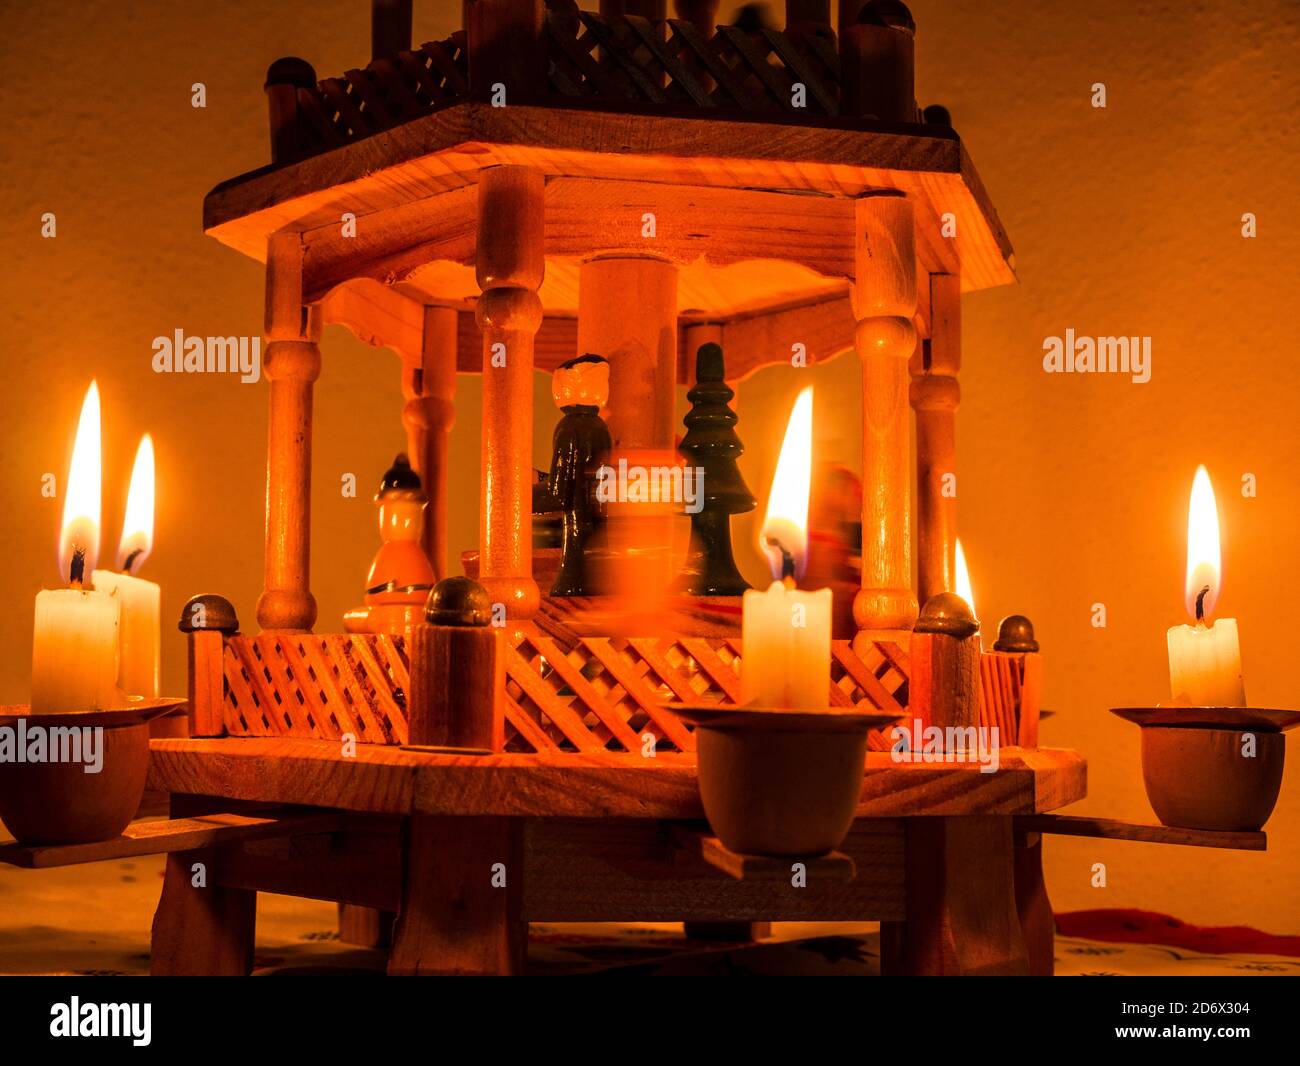 Nahaufnahme der Weihnachtspyramide mit brennenden Kerzen - Figuren in Die  Mitte wird in Bewegung gefangen Stockfotografie - Alamy